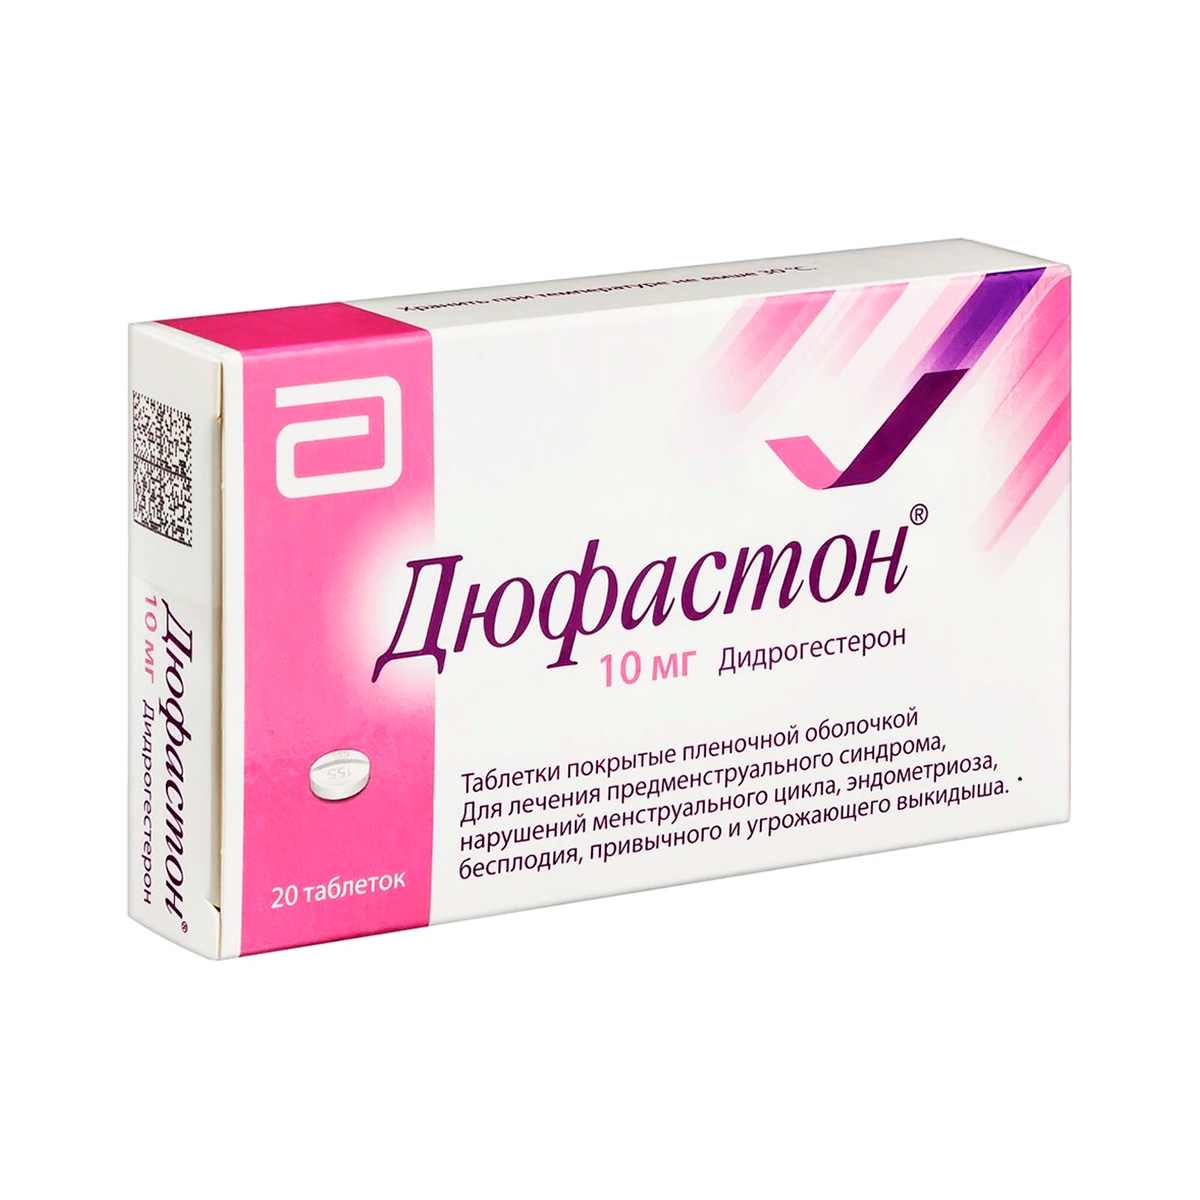 Дюфастон 10 мг таблетки покрытые пленочной оболочкой 20 шт